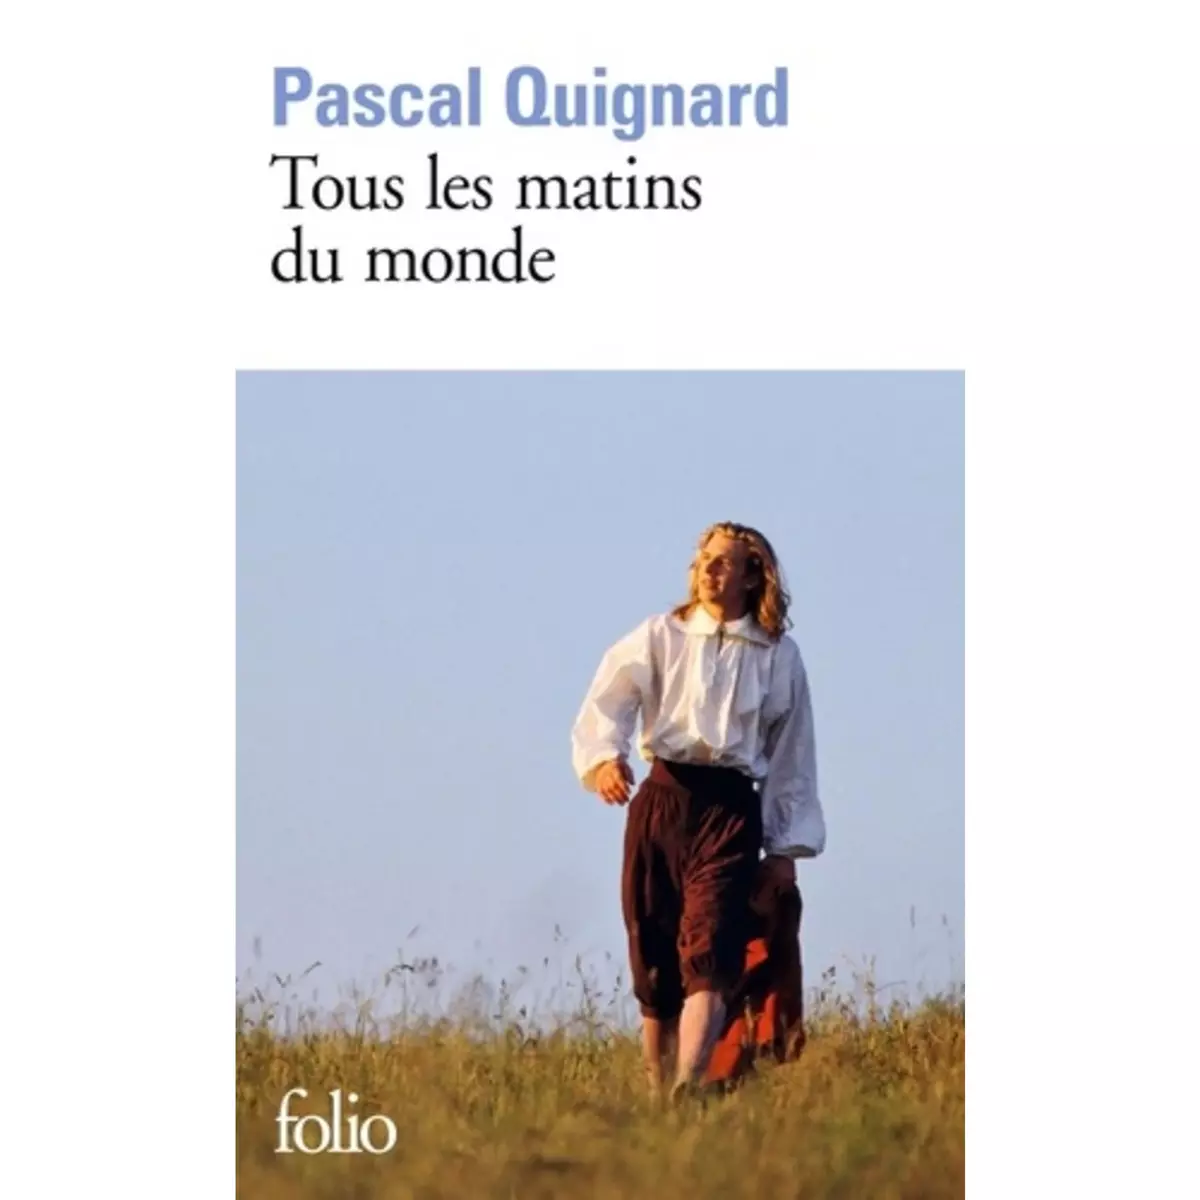  TOUS LES MATINS DU MONDE, Quignard Pascal